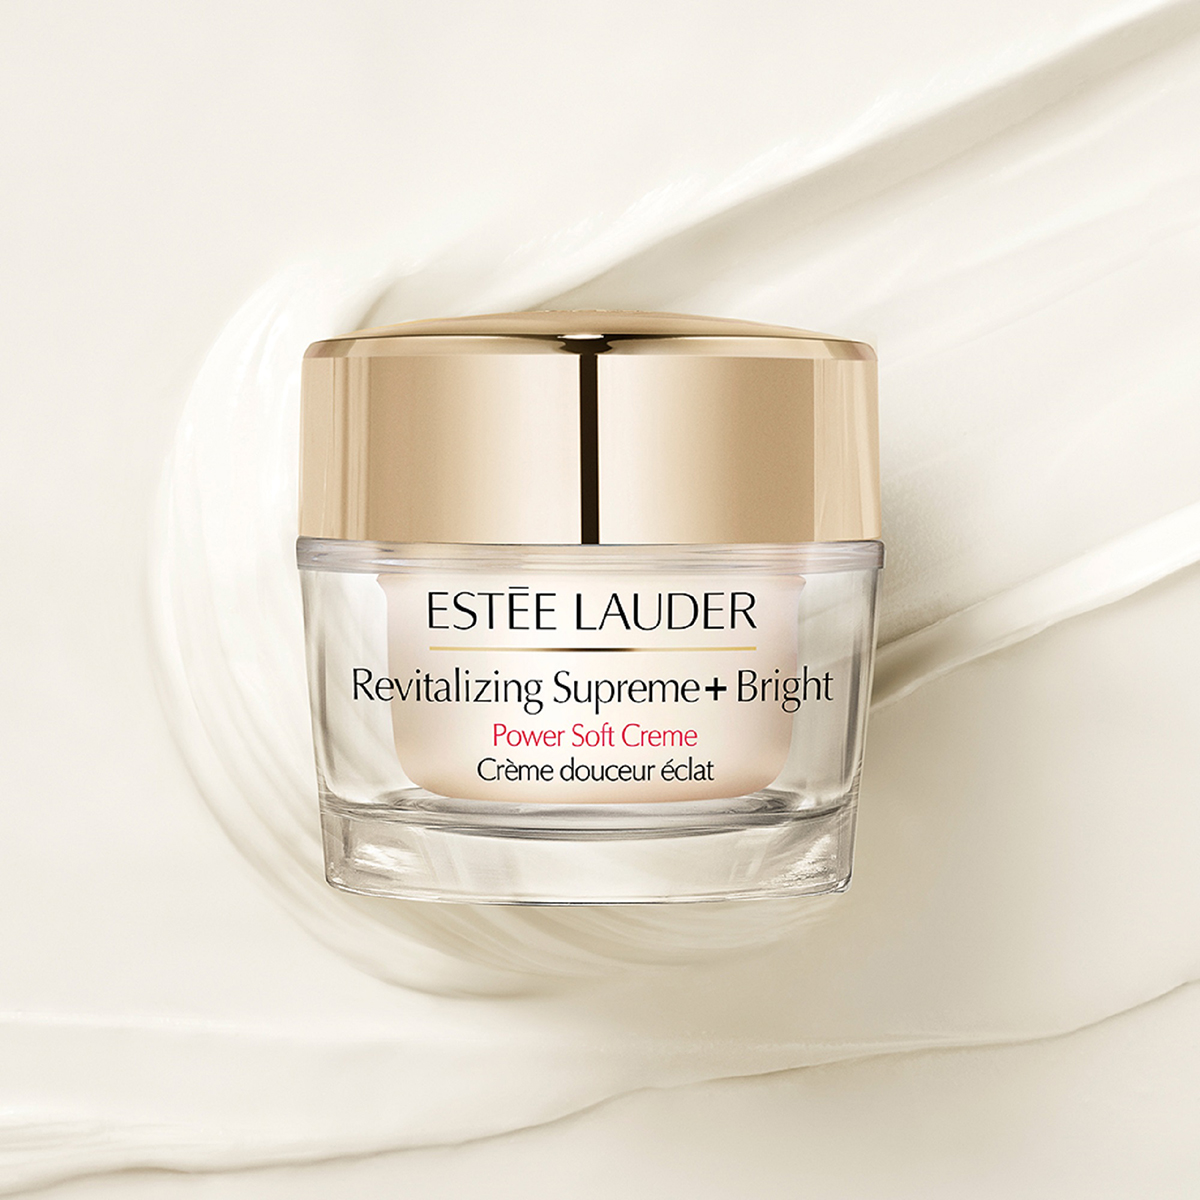 Estee Lauder(tm) Revitalizing Supreme+ Bright Power Soft Creme